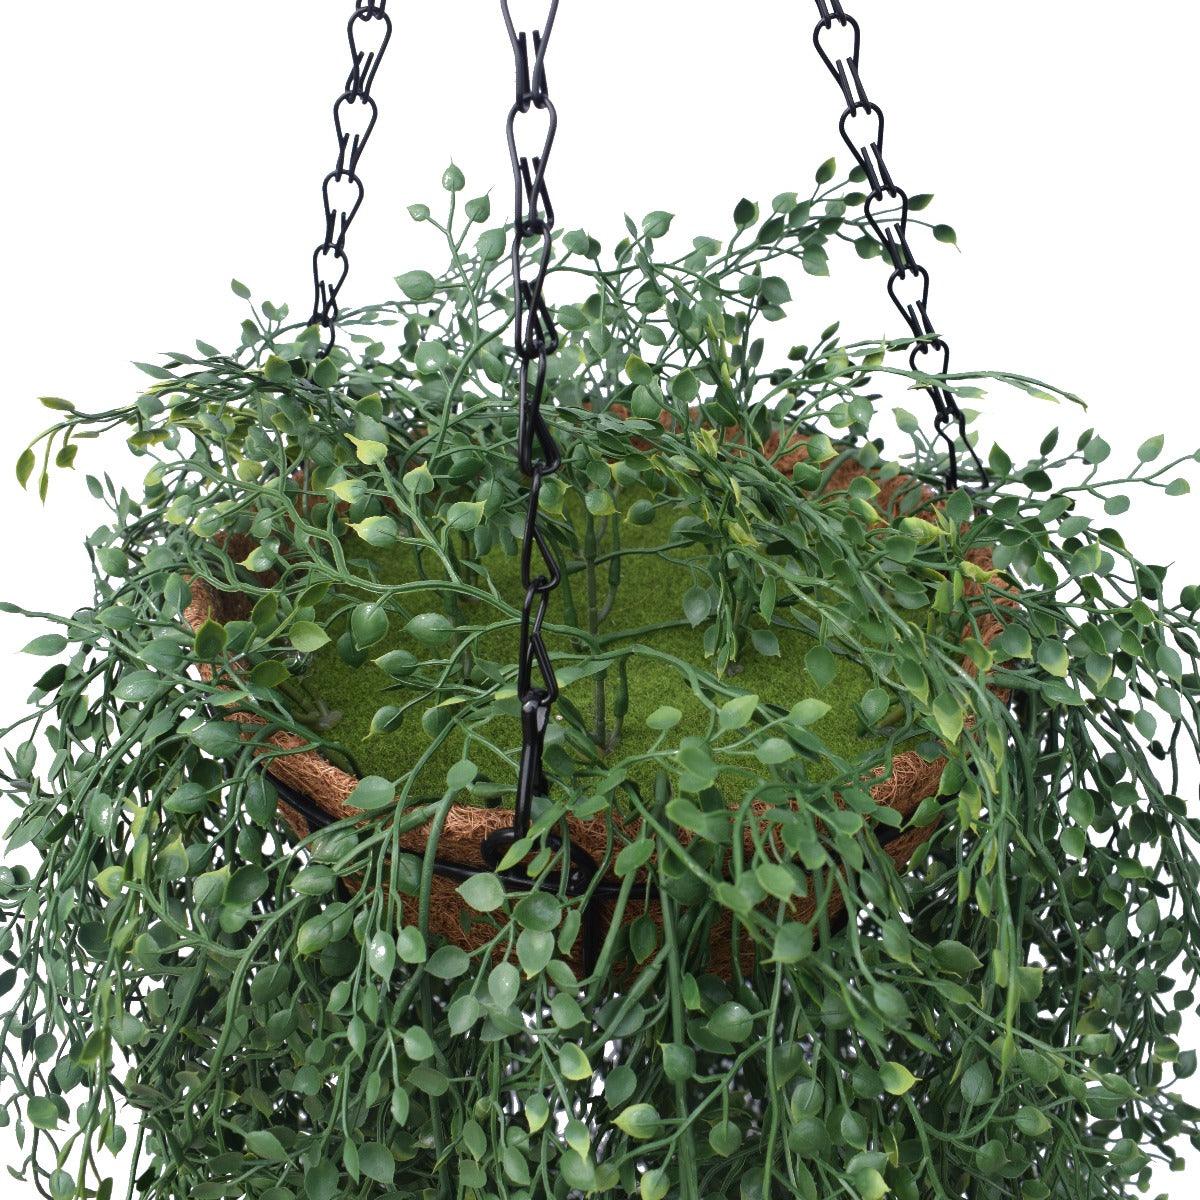 English Hanging Basket 110 cm